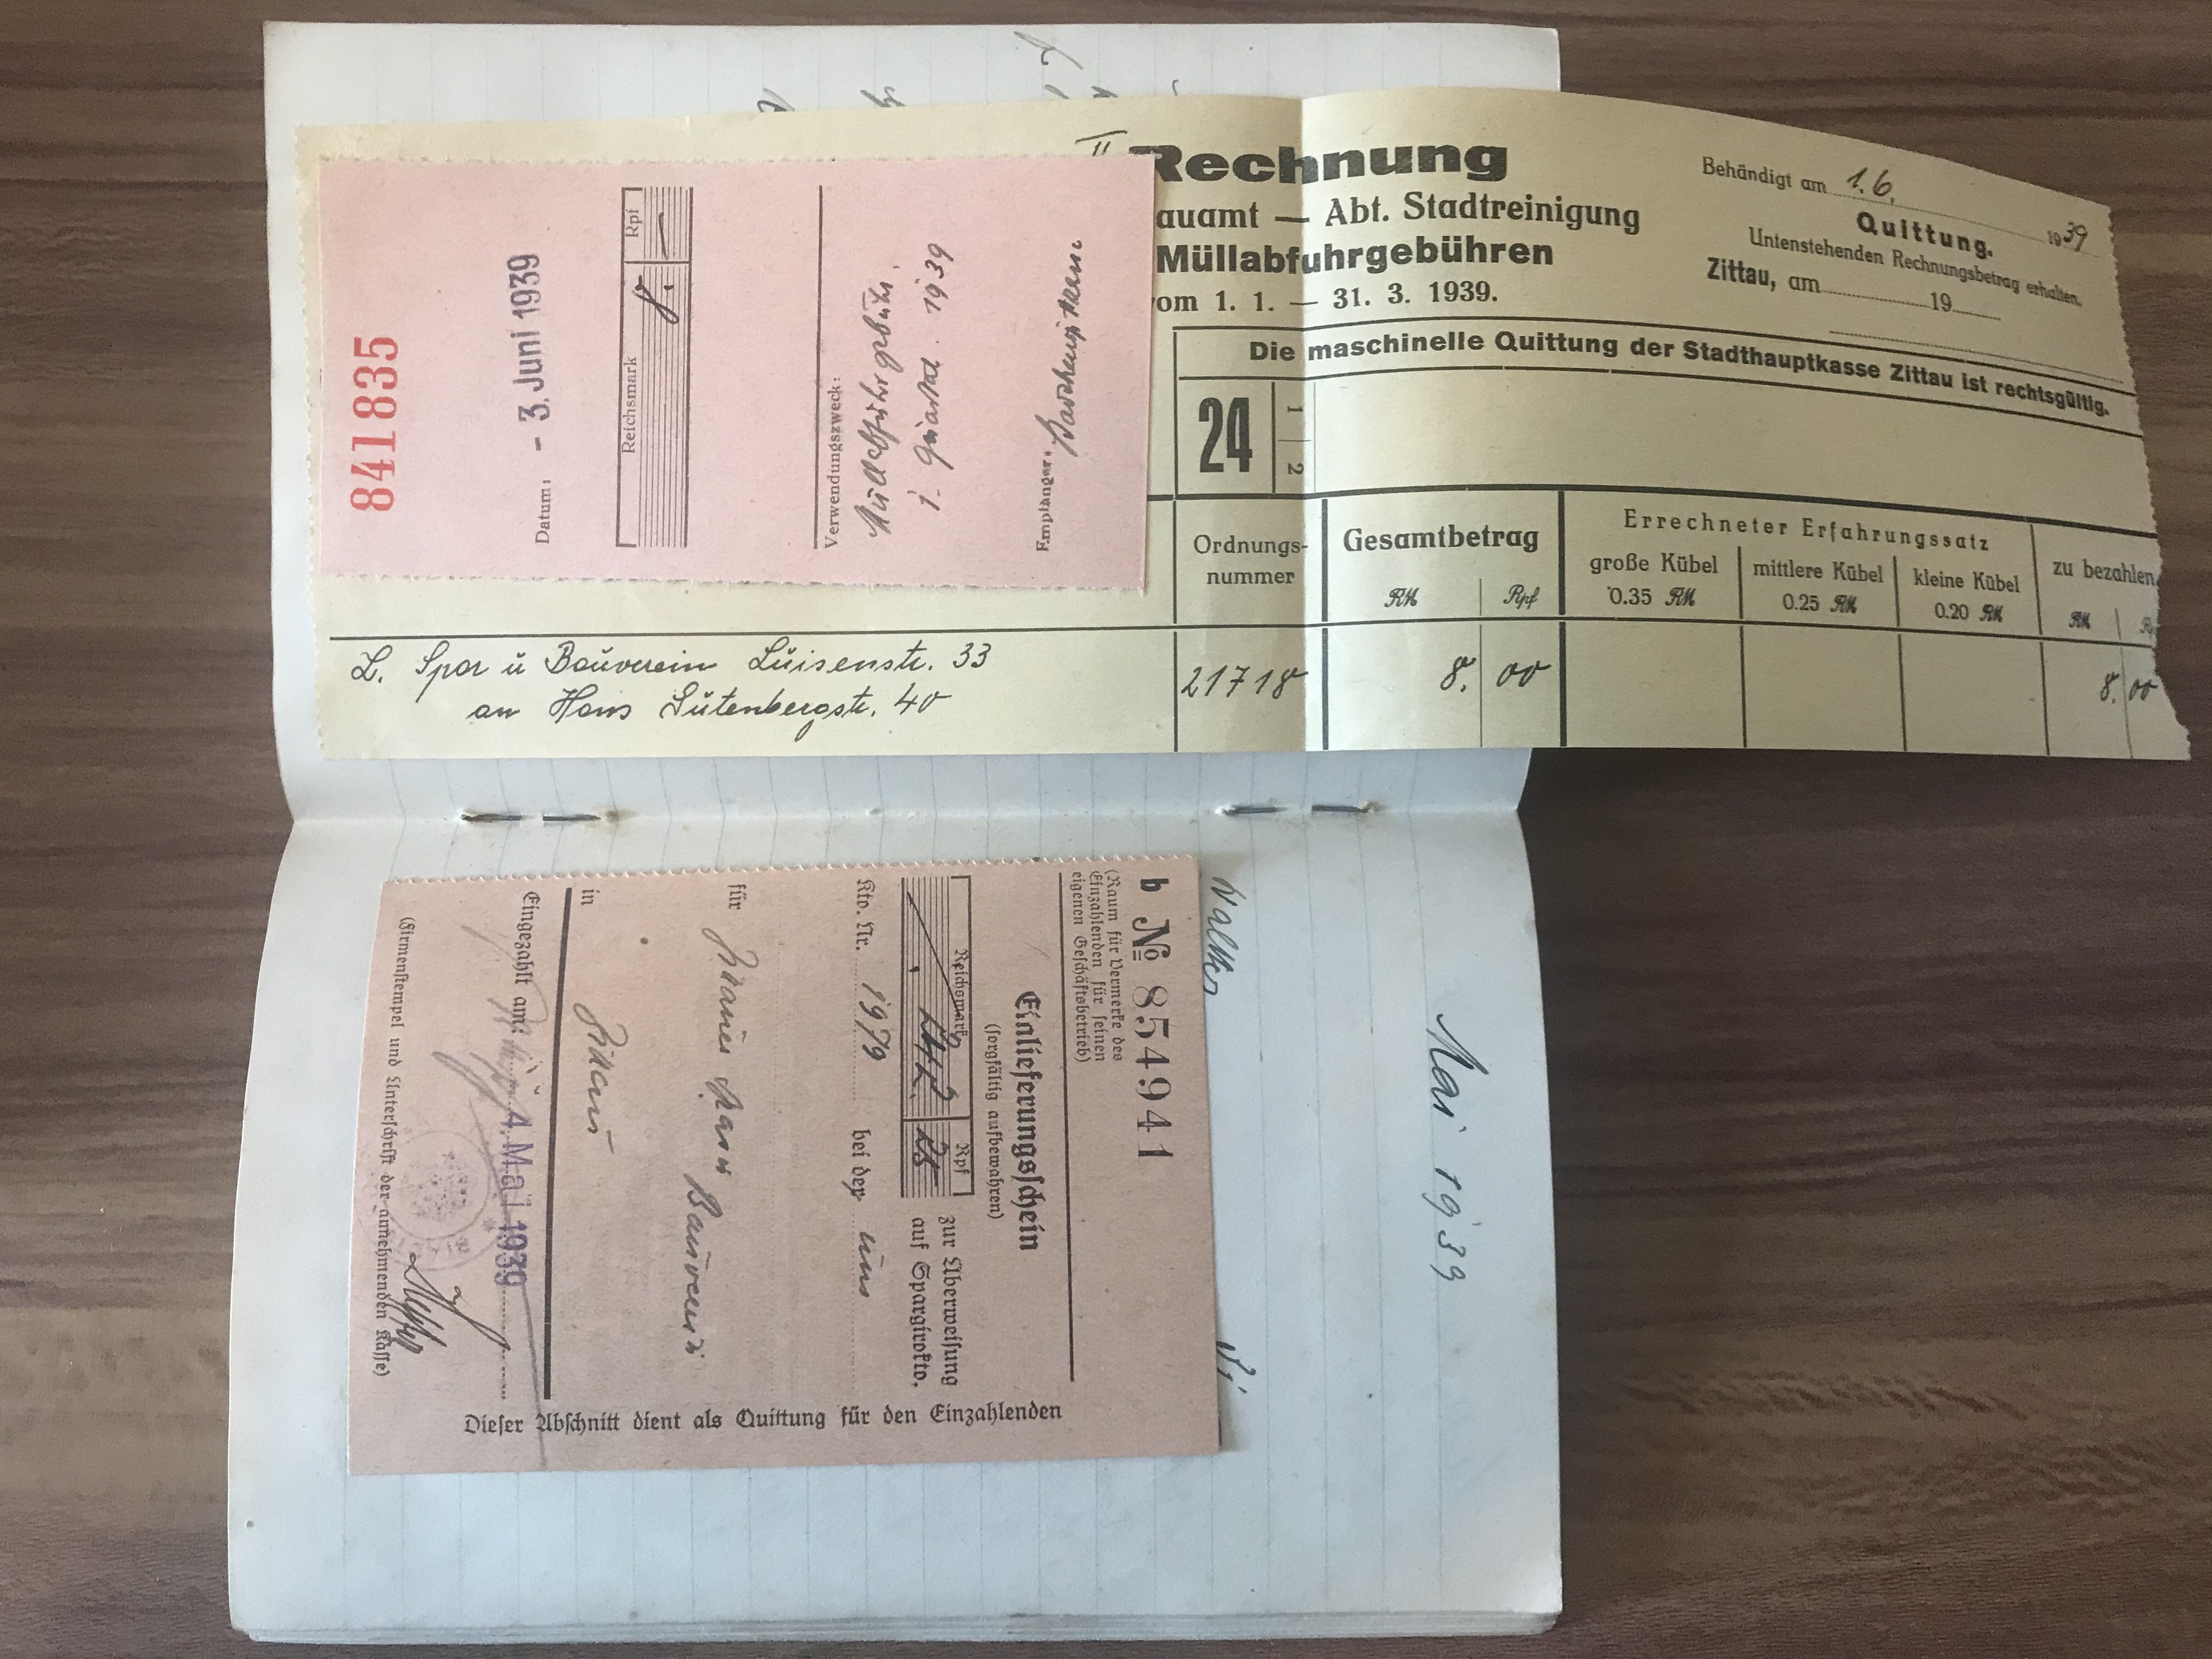 Heft Zittauer Spar- u. Bauverein E.G.m.b.H. 1936 – 1940 Einlieferungsscheine Post Brief Buch